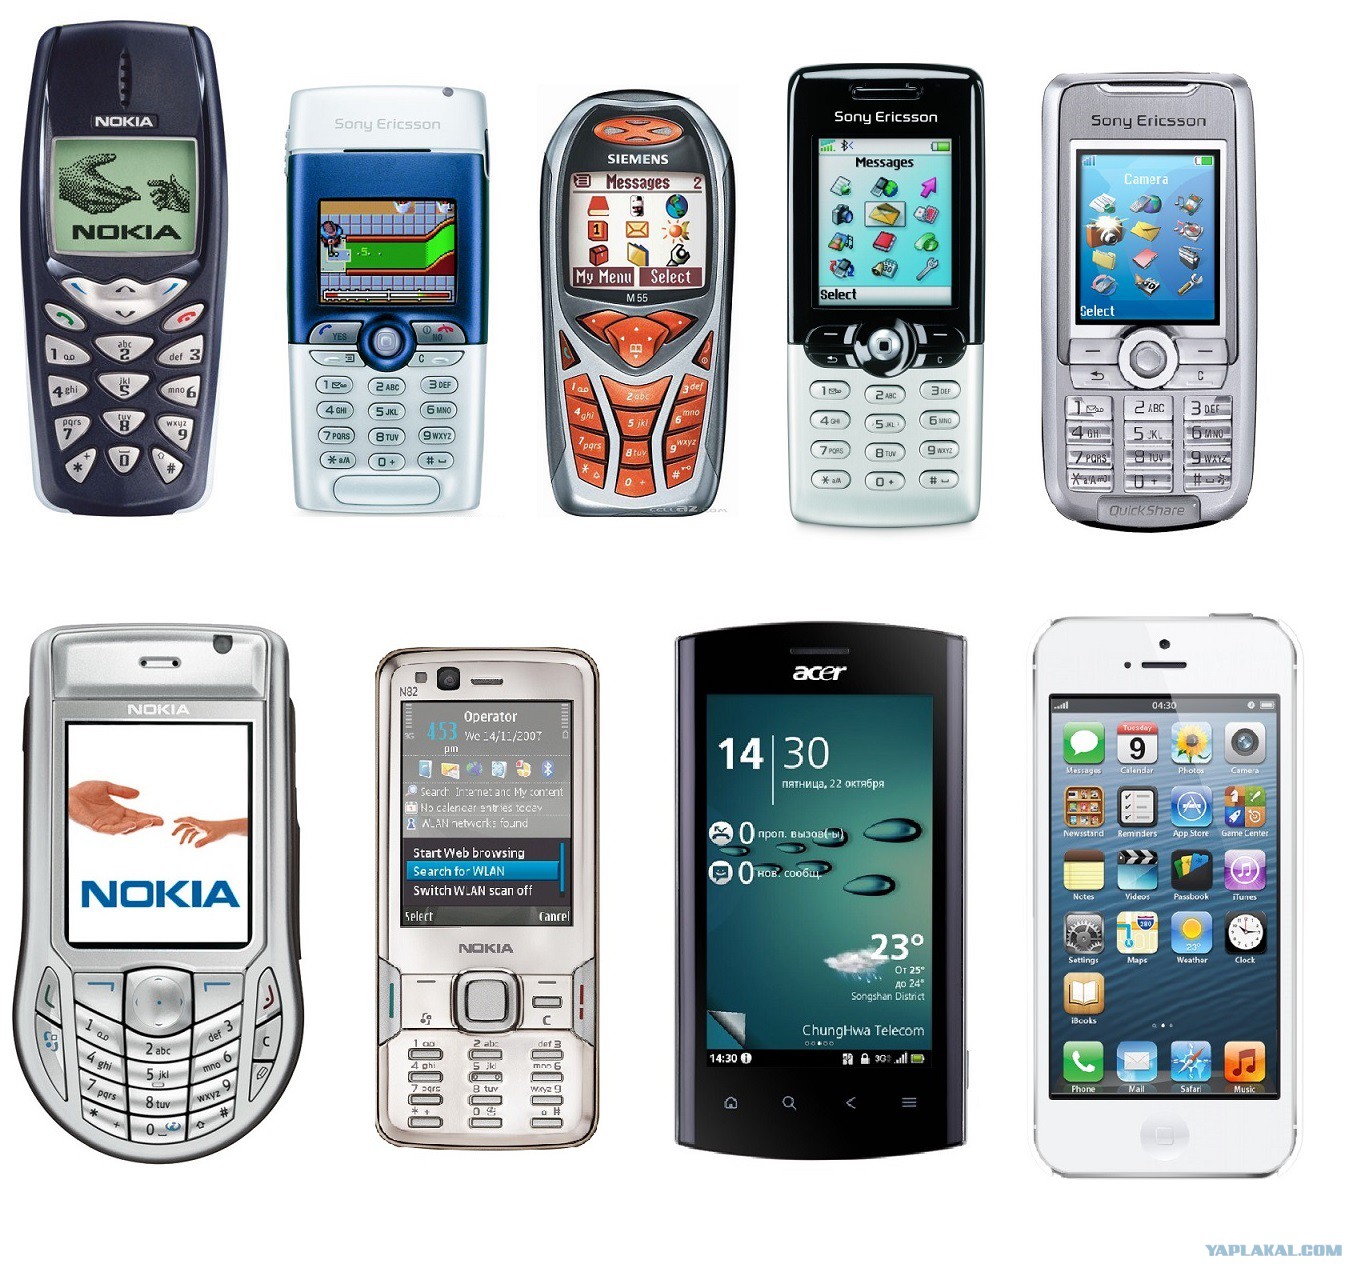 Nokia 3510, Sony Ericsson T310, Siemens M55, Sony Ericsson T610, Sony Erics...